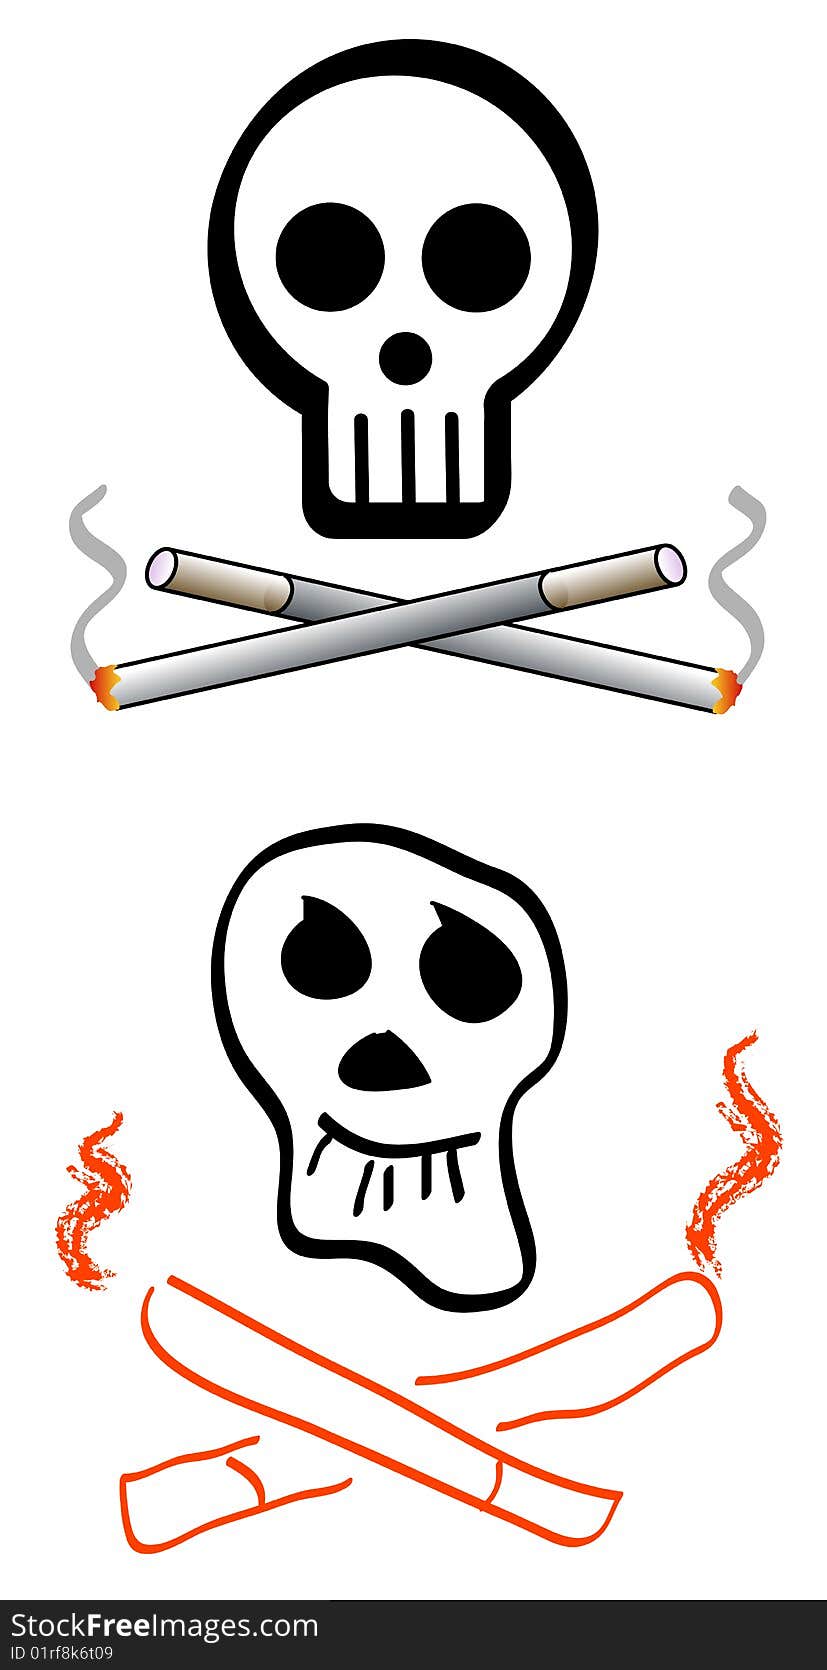 Smoking danger symbol  illustrated logo